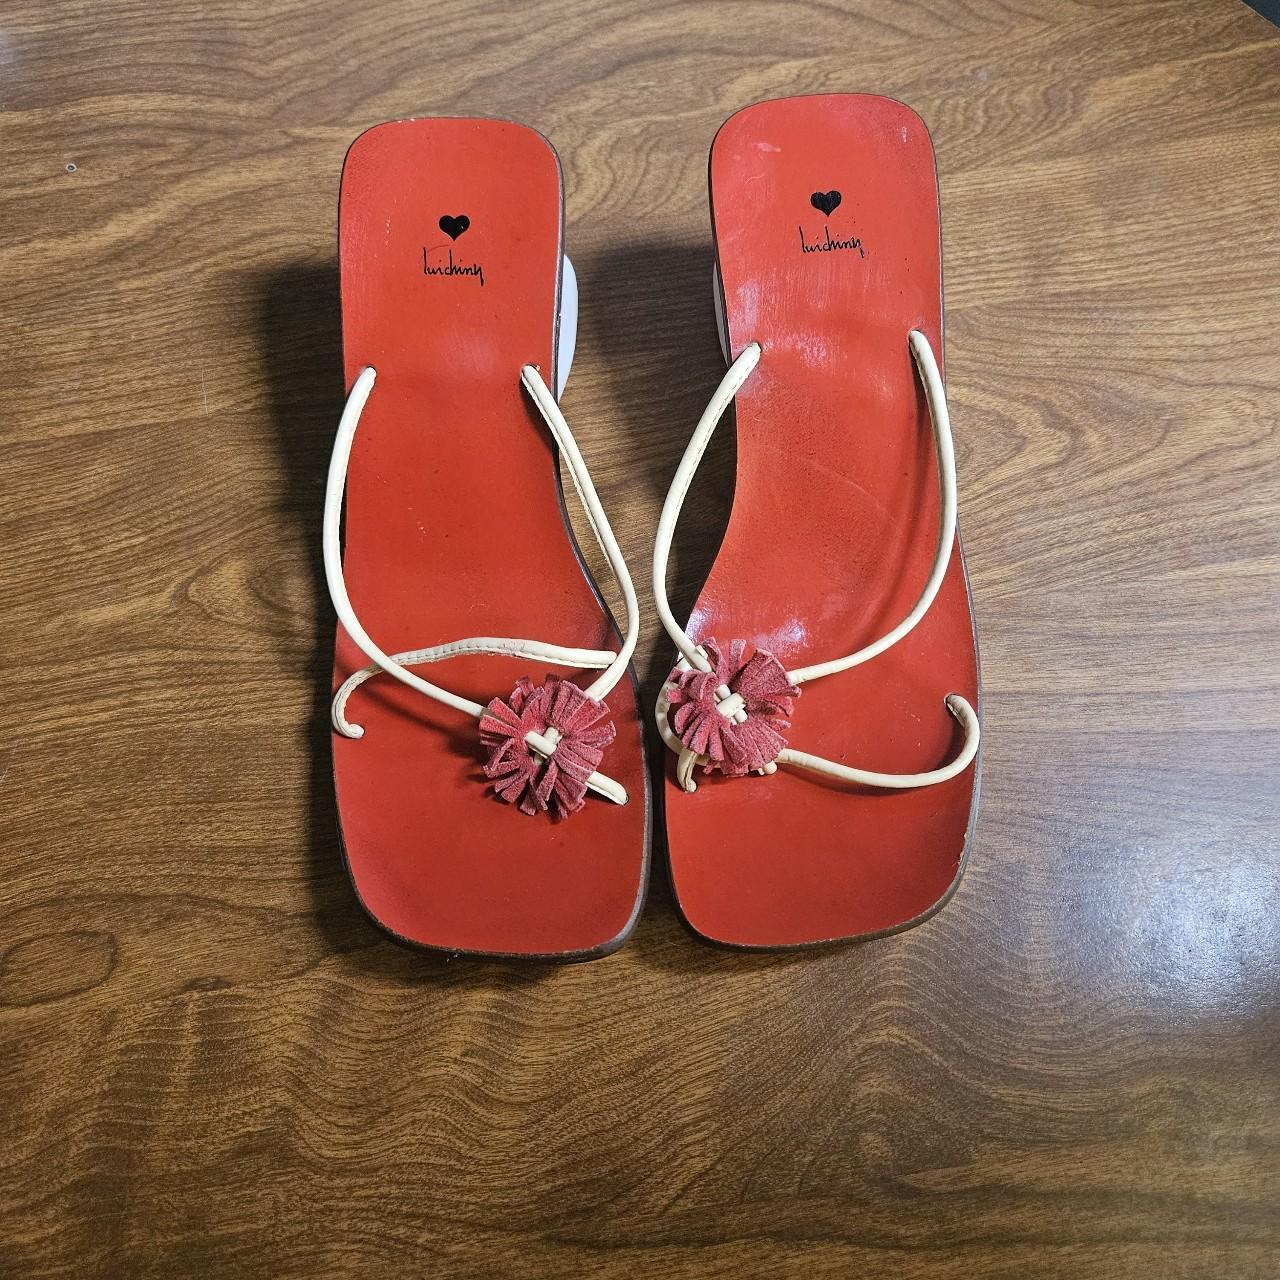 Liu Ching Platform Sandals Size 9.5 Vintage... - Depop